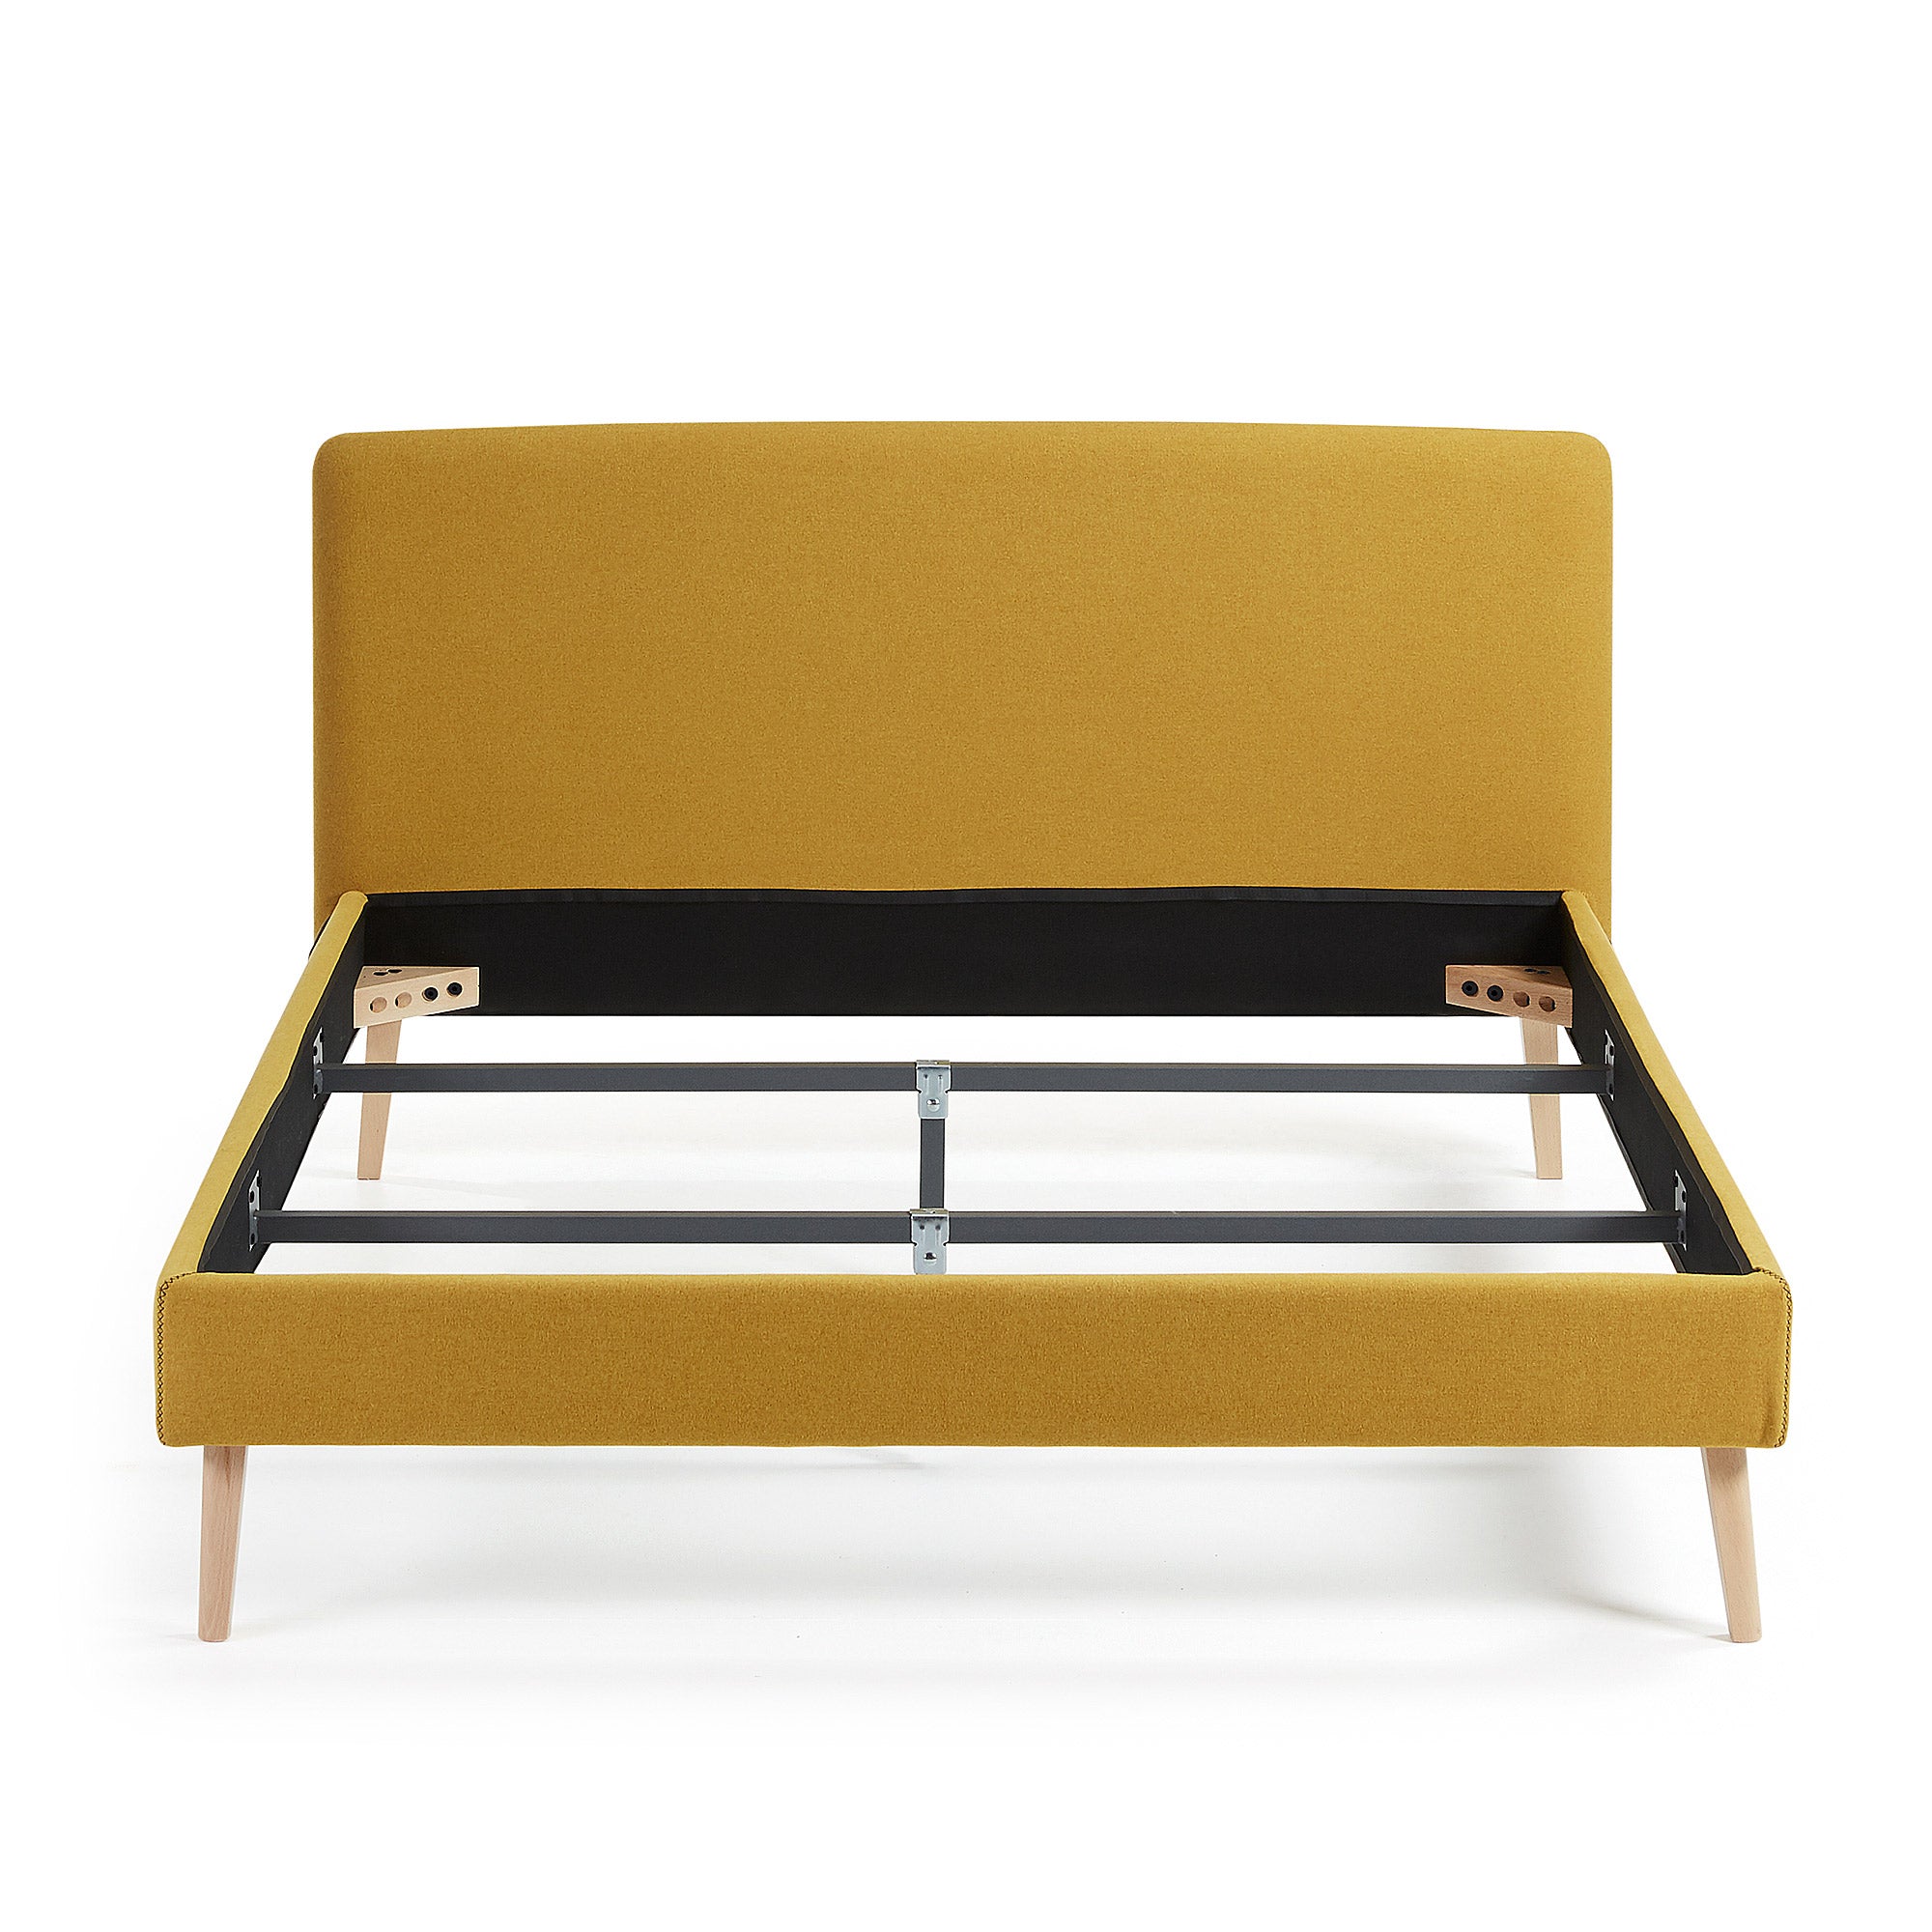 Dyla ágy levehető huzattal, mustár színben, tömör bükkfa lábakkal, 150 x 190 cm-es matrachoz